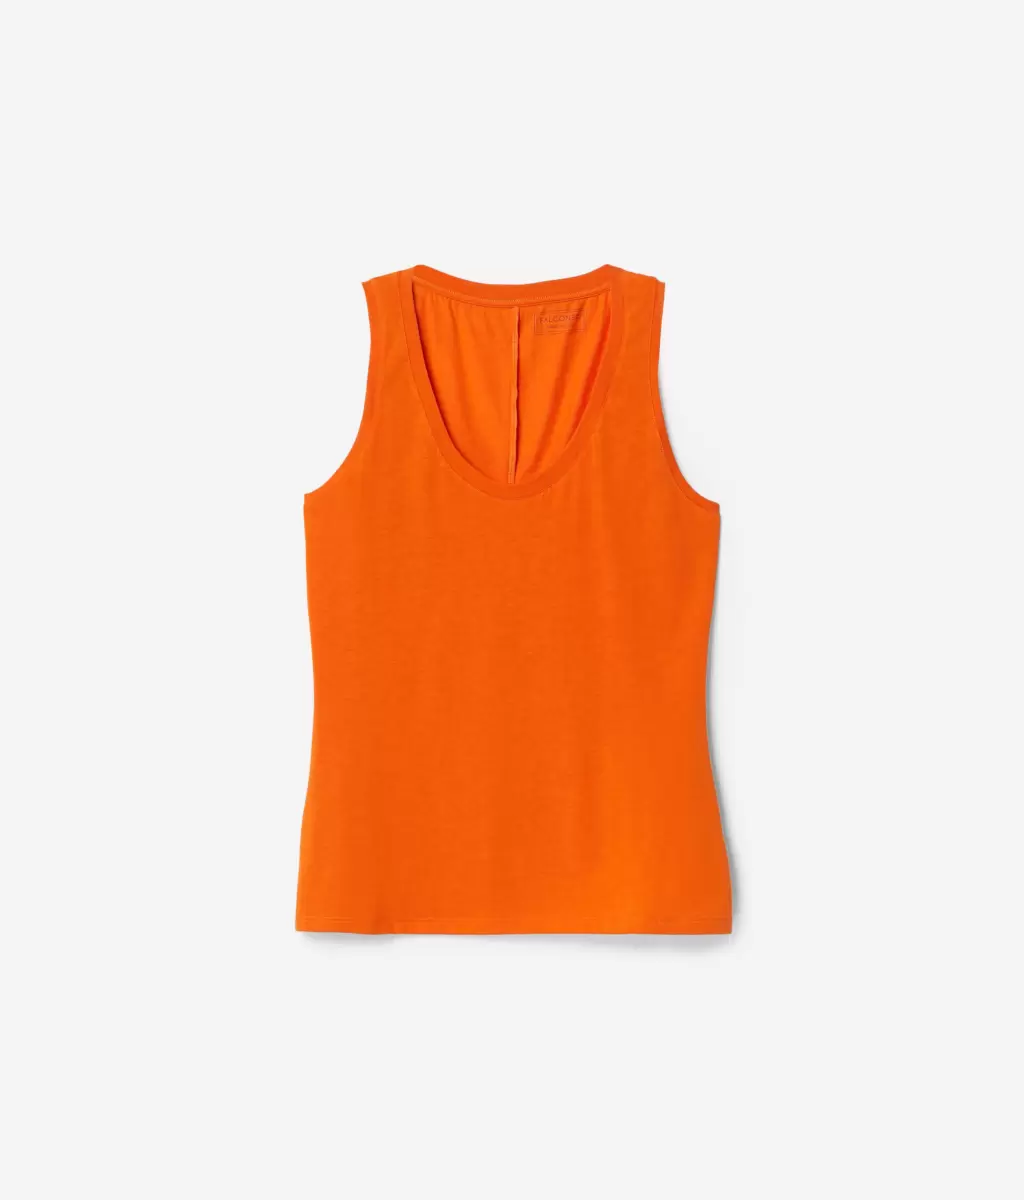 Falconeri Kobieta Topy I T-Shirty Top Bokserka Z Dużym Dekoltem Z Jedwabiu Fresh Orange - 4